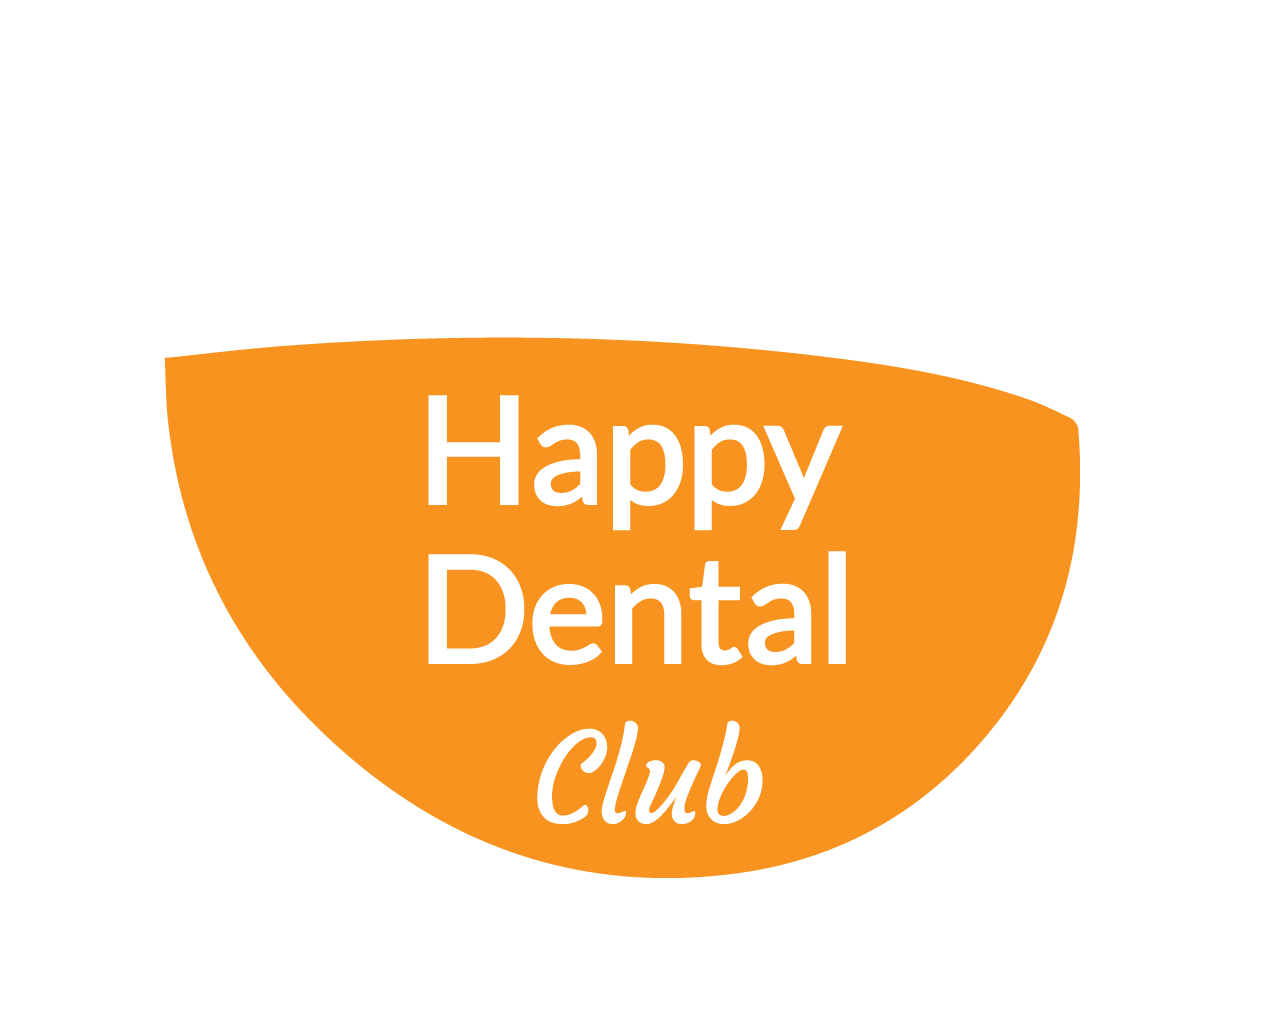 Creative smile dental clinic logo vector design. | CanStock